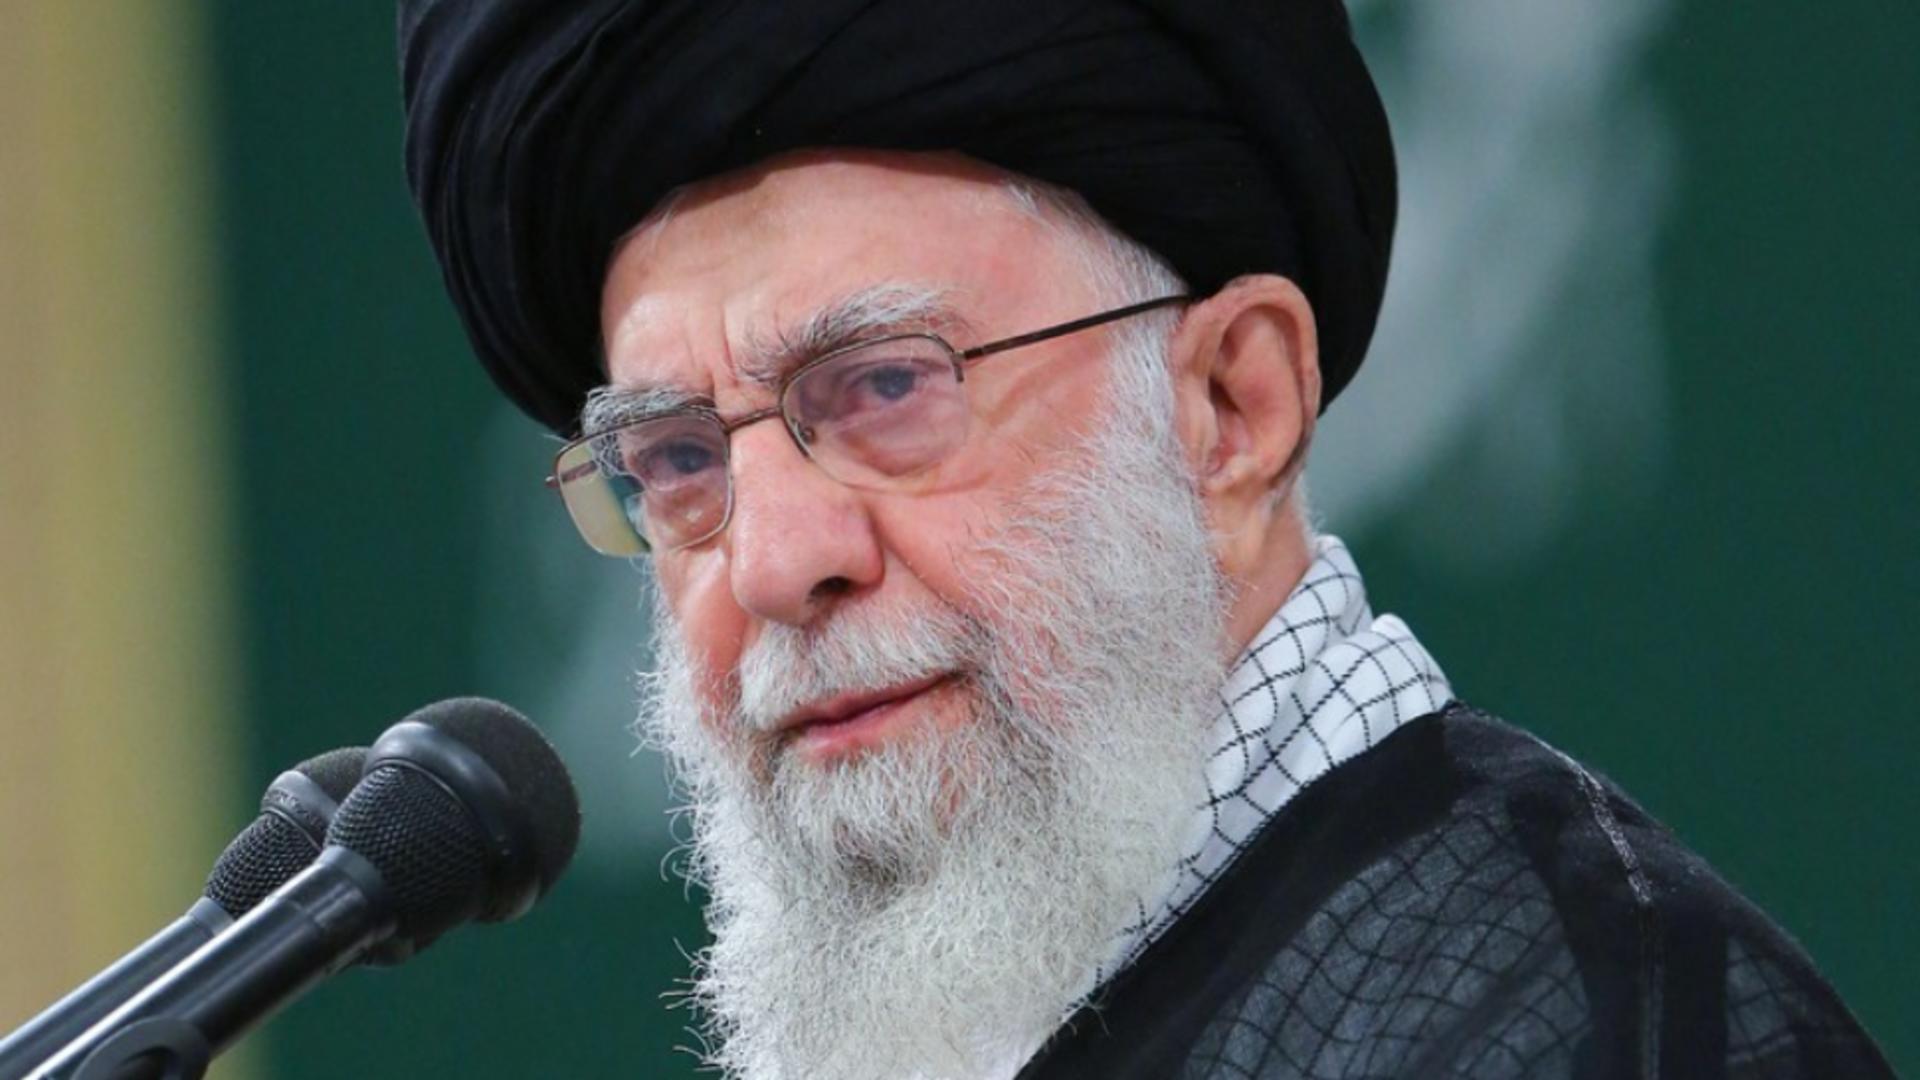 Iranul cheamă oficial la BOICOT împotriva Israel, după atacul Hamas – Khamenei a lansat semnalul către toate țările musulmane